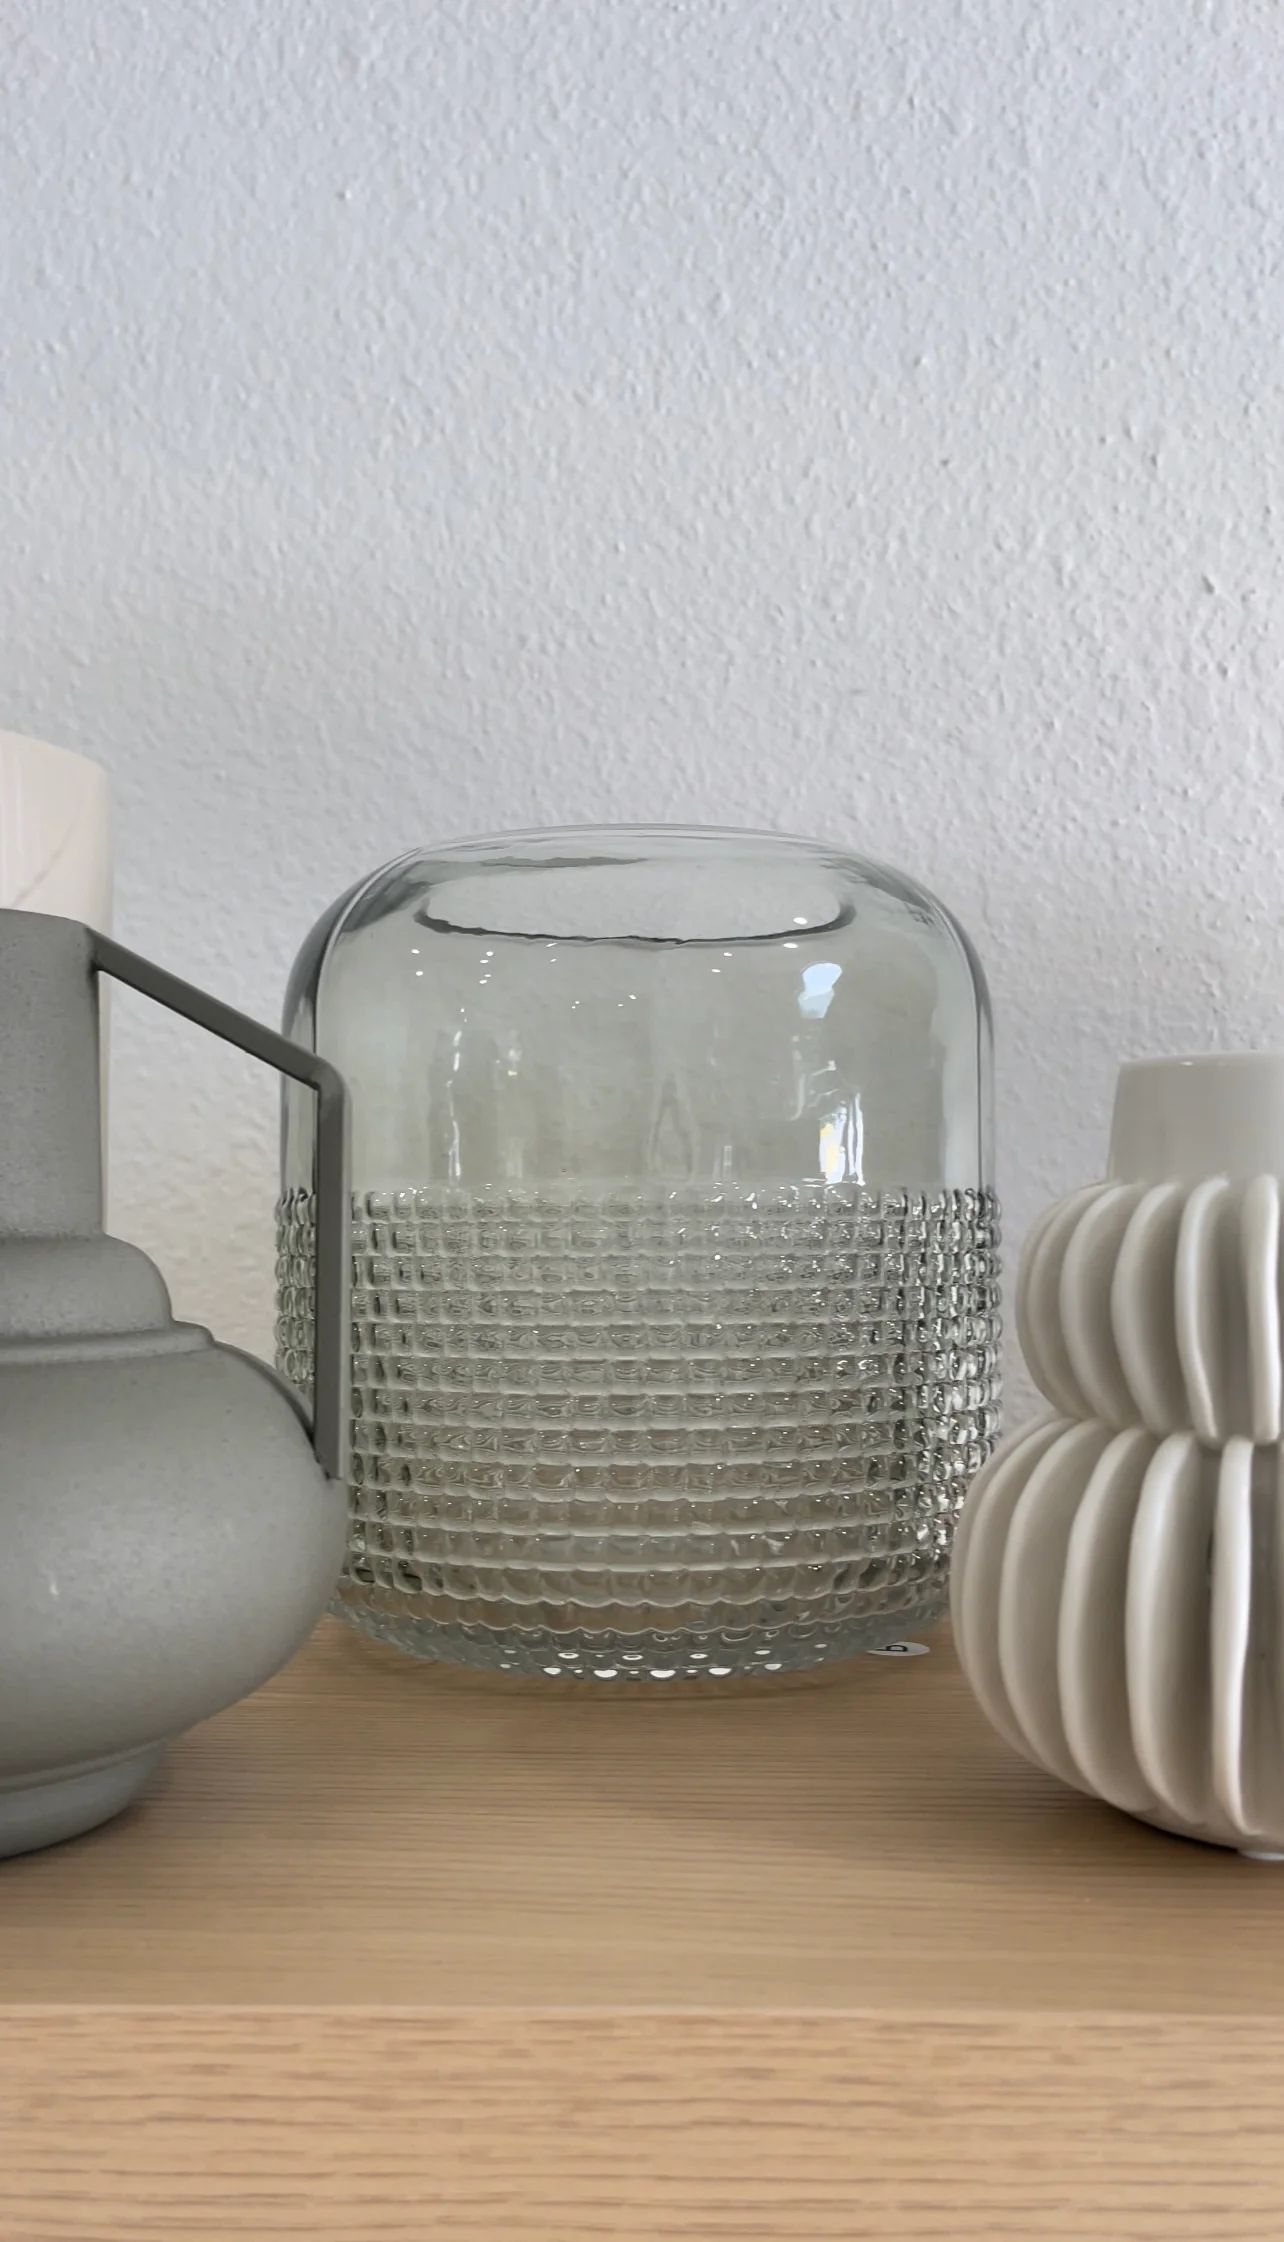 Clerel Vase | Sweenshots Studios